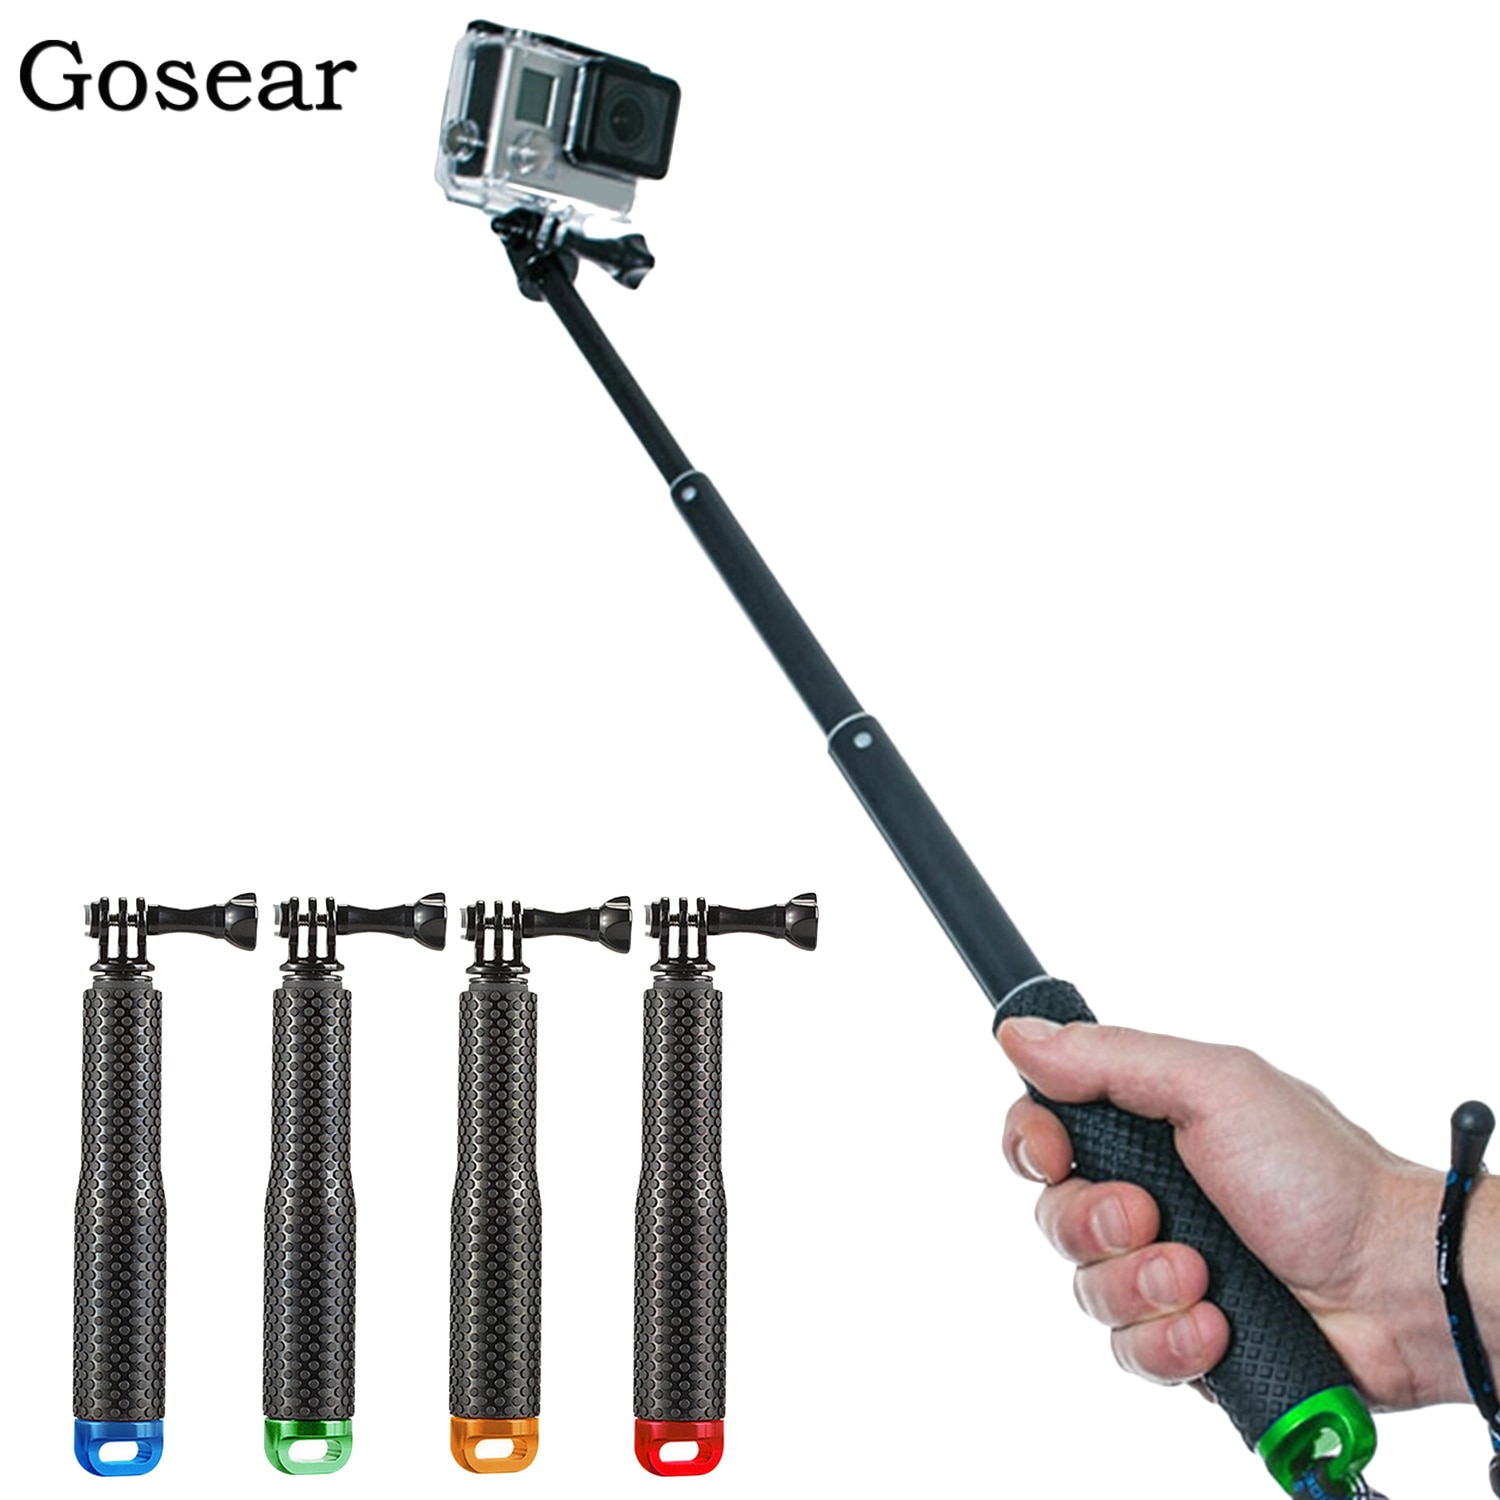 Gosear Verstelbare Uitschuifbare Camera Selfie Stick Handheld Monopod met Polsband voor GoPro Hero 6 5 4 3 + 3 2 SJ4000 Accessoires